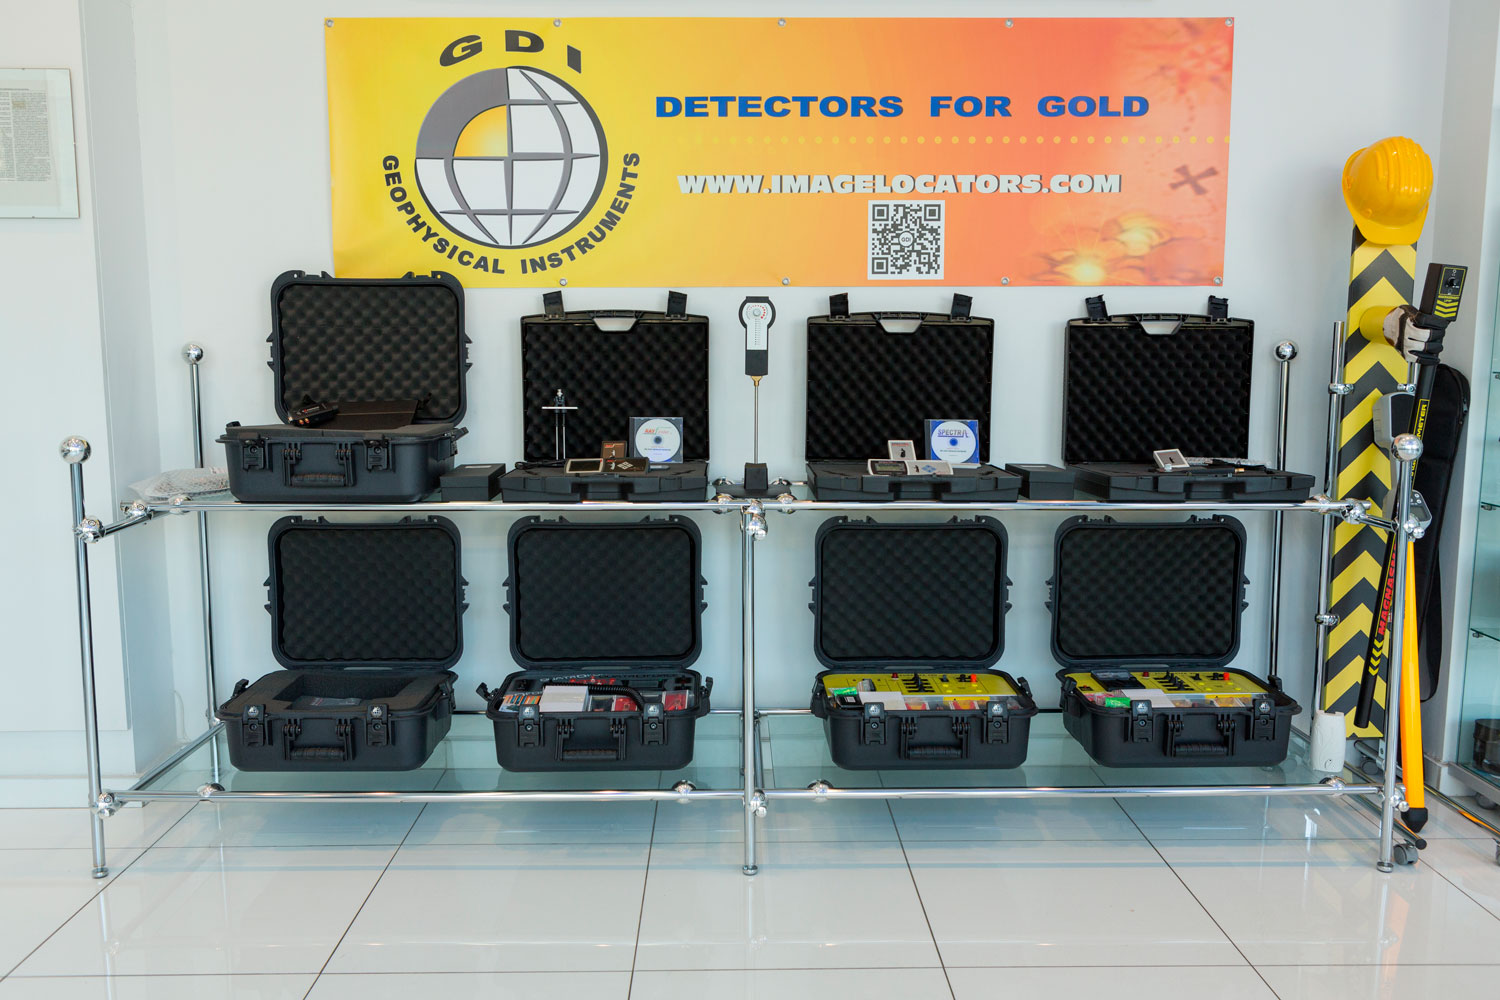 gdi-metal-gold-detectors-showroom-store-athens-greece